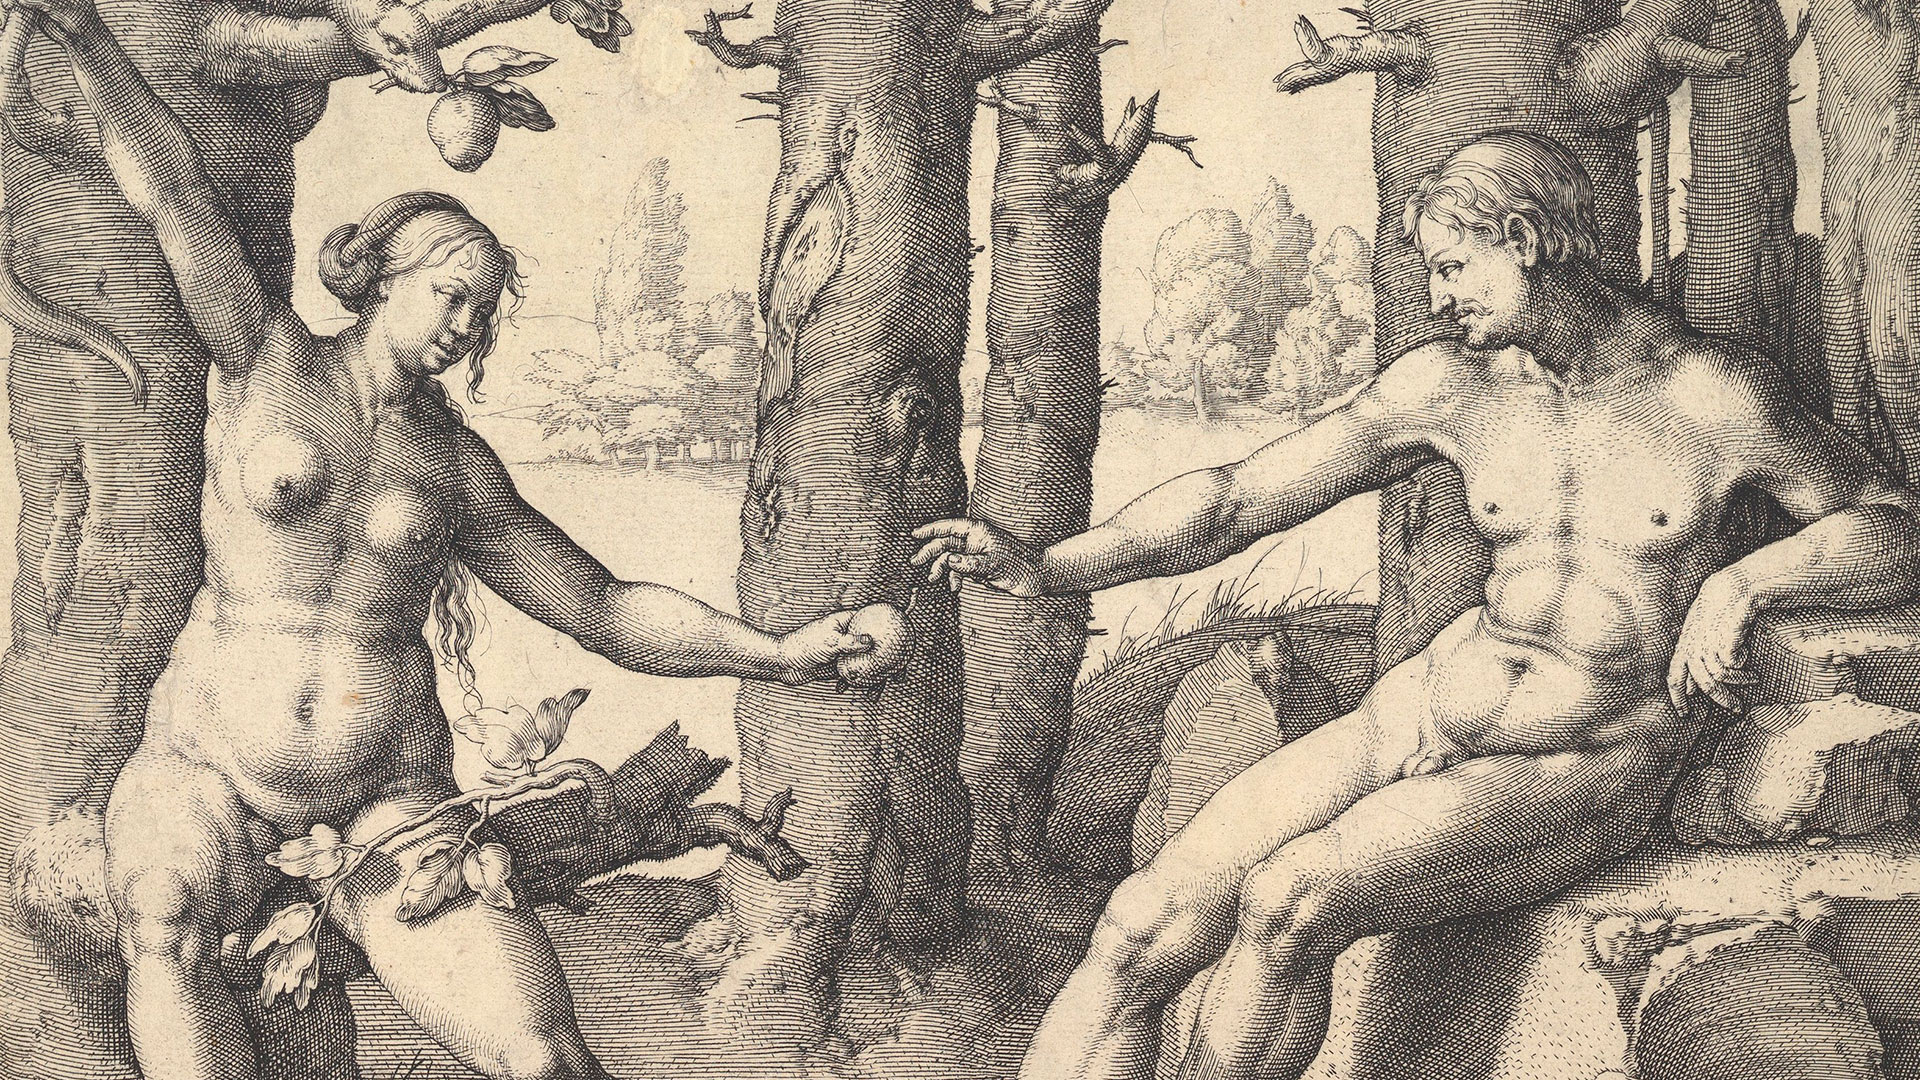 En el siglo XVI, las hechiceras eran consideradas las hijas directas de Eva,  la primera mujer condenada por su deseo de conocimiento. (Getty Images)